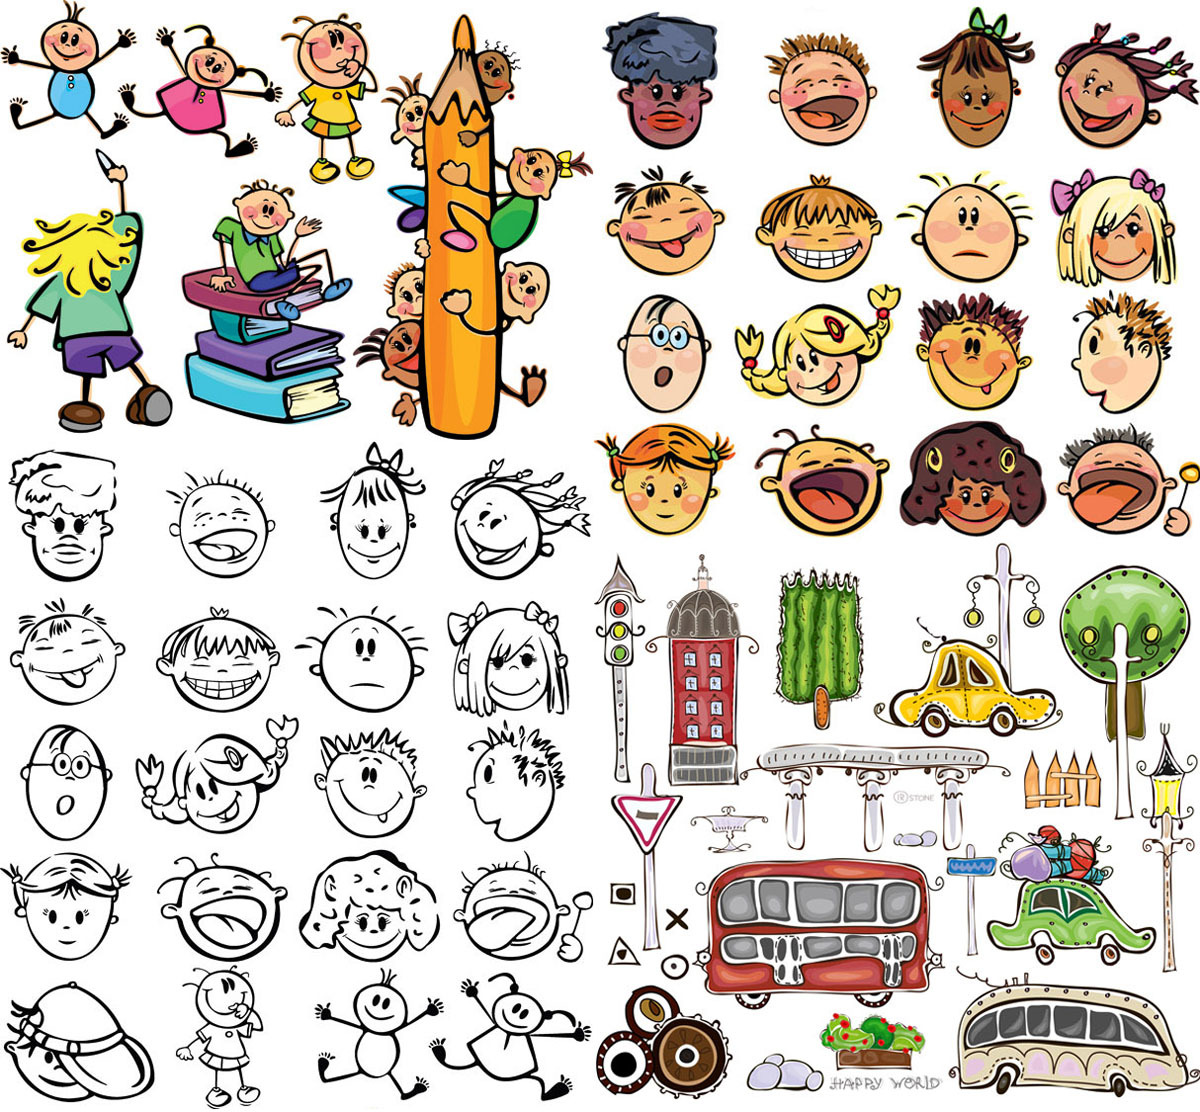 手绘涂鸦儿童宝宝头像幼儿园小朋友笑脸巴士矢量图案设计素材A825